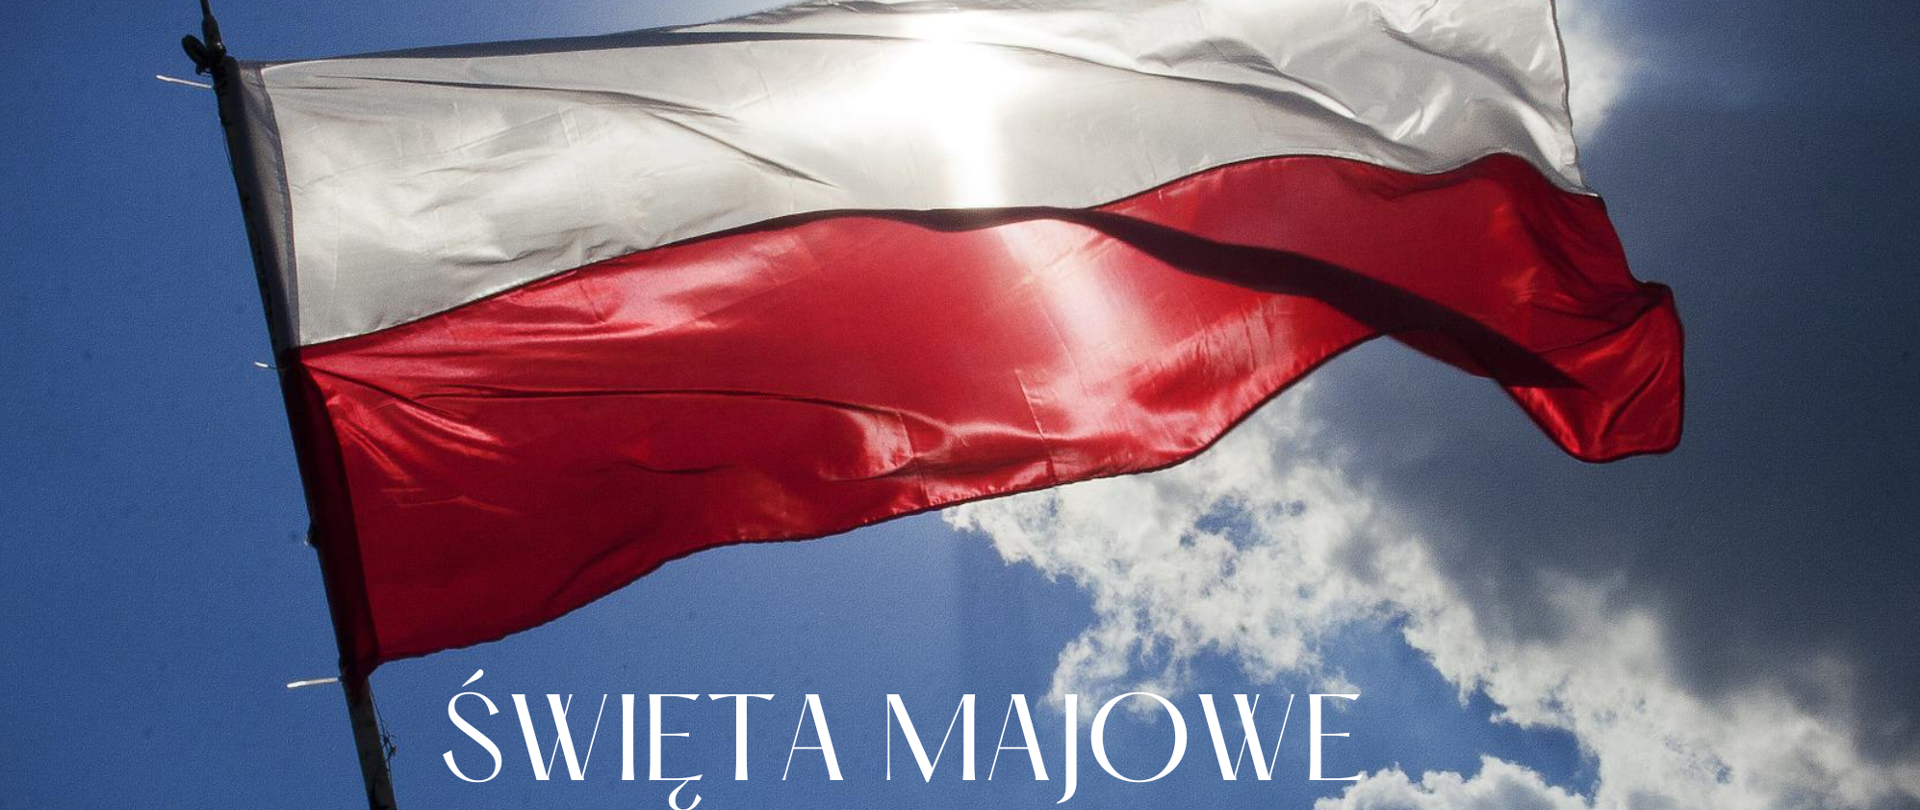 Zdjęcie flagi Polski na tle błękitnego , lekko zachmurzonego nieba. Napis pod flagą: ŚWIĘTA MAJOWE 1-3 MAJA